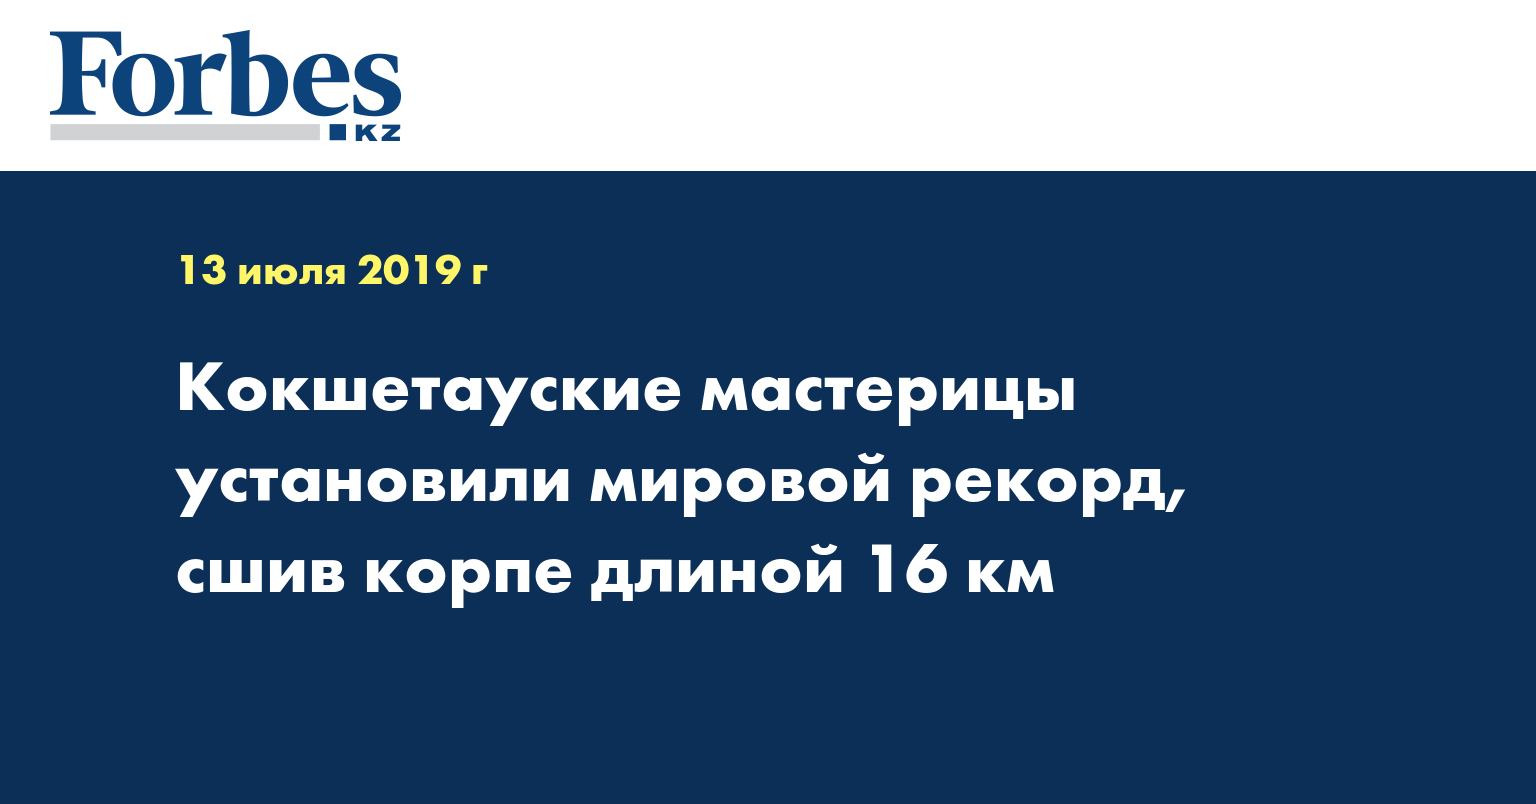 Кокшетауские мастерицы установили мировой рекорд, сшив корпе длиной 16 км